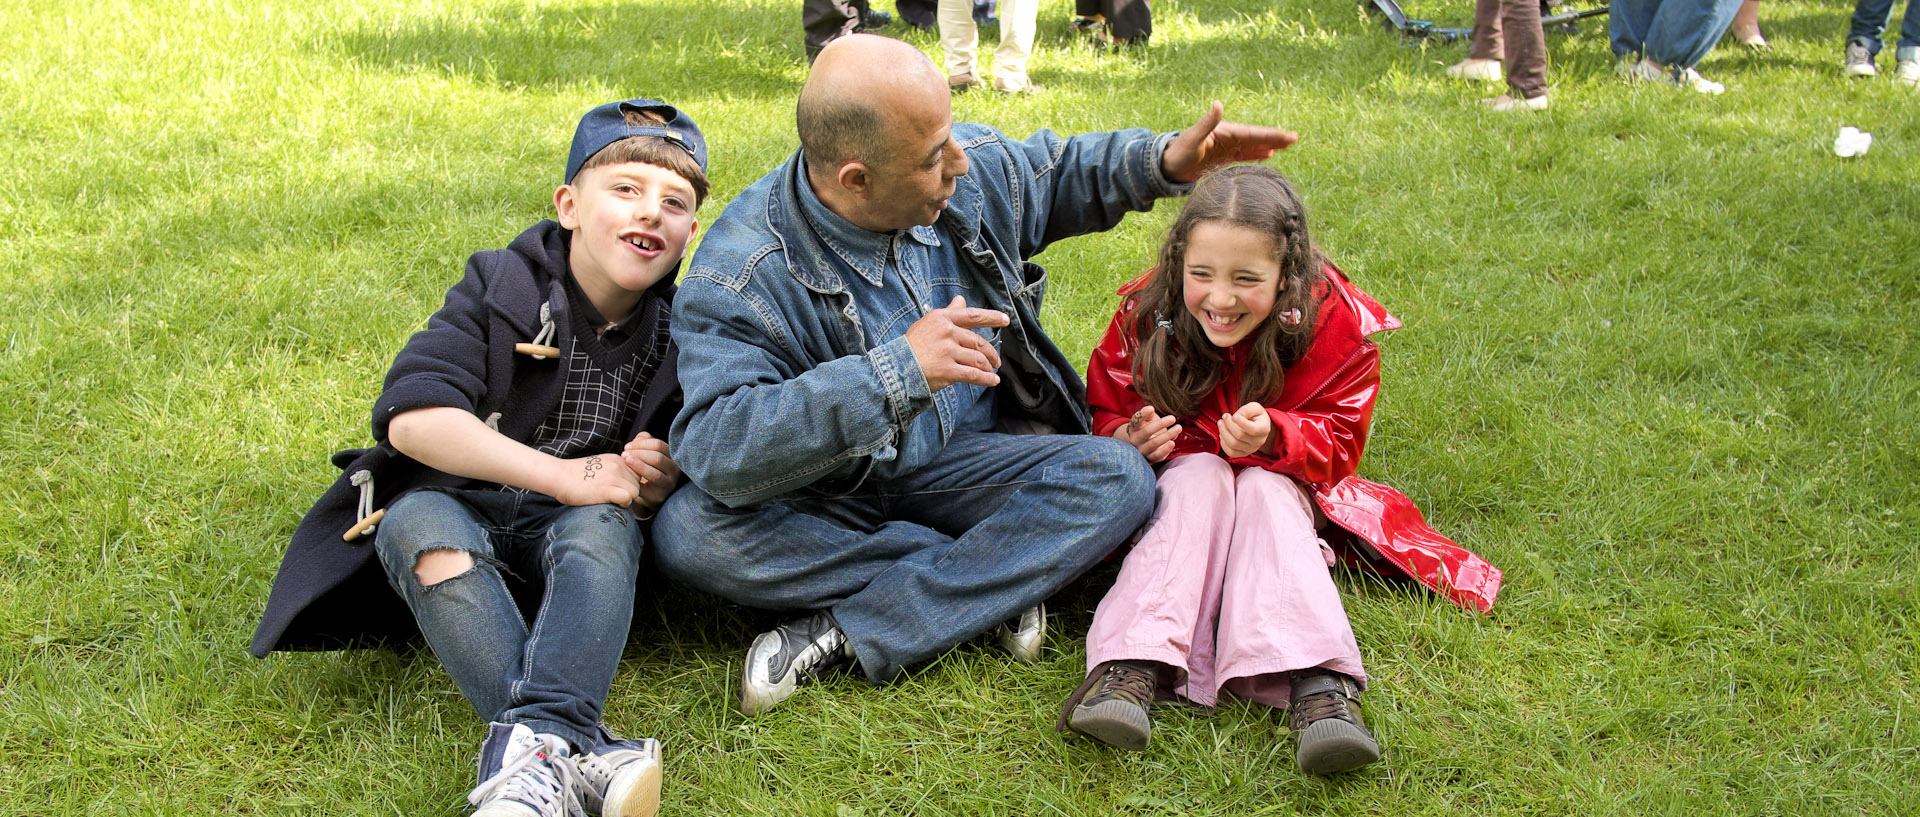 Un père et ses enfants assis sur l'herbe, pendant la fête de quartier des Hauts Champs, à Roubaix.